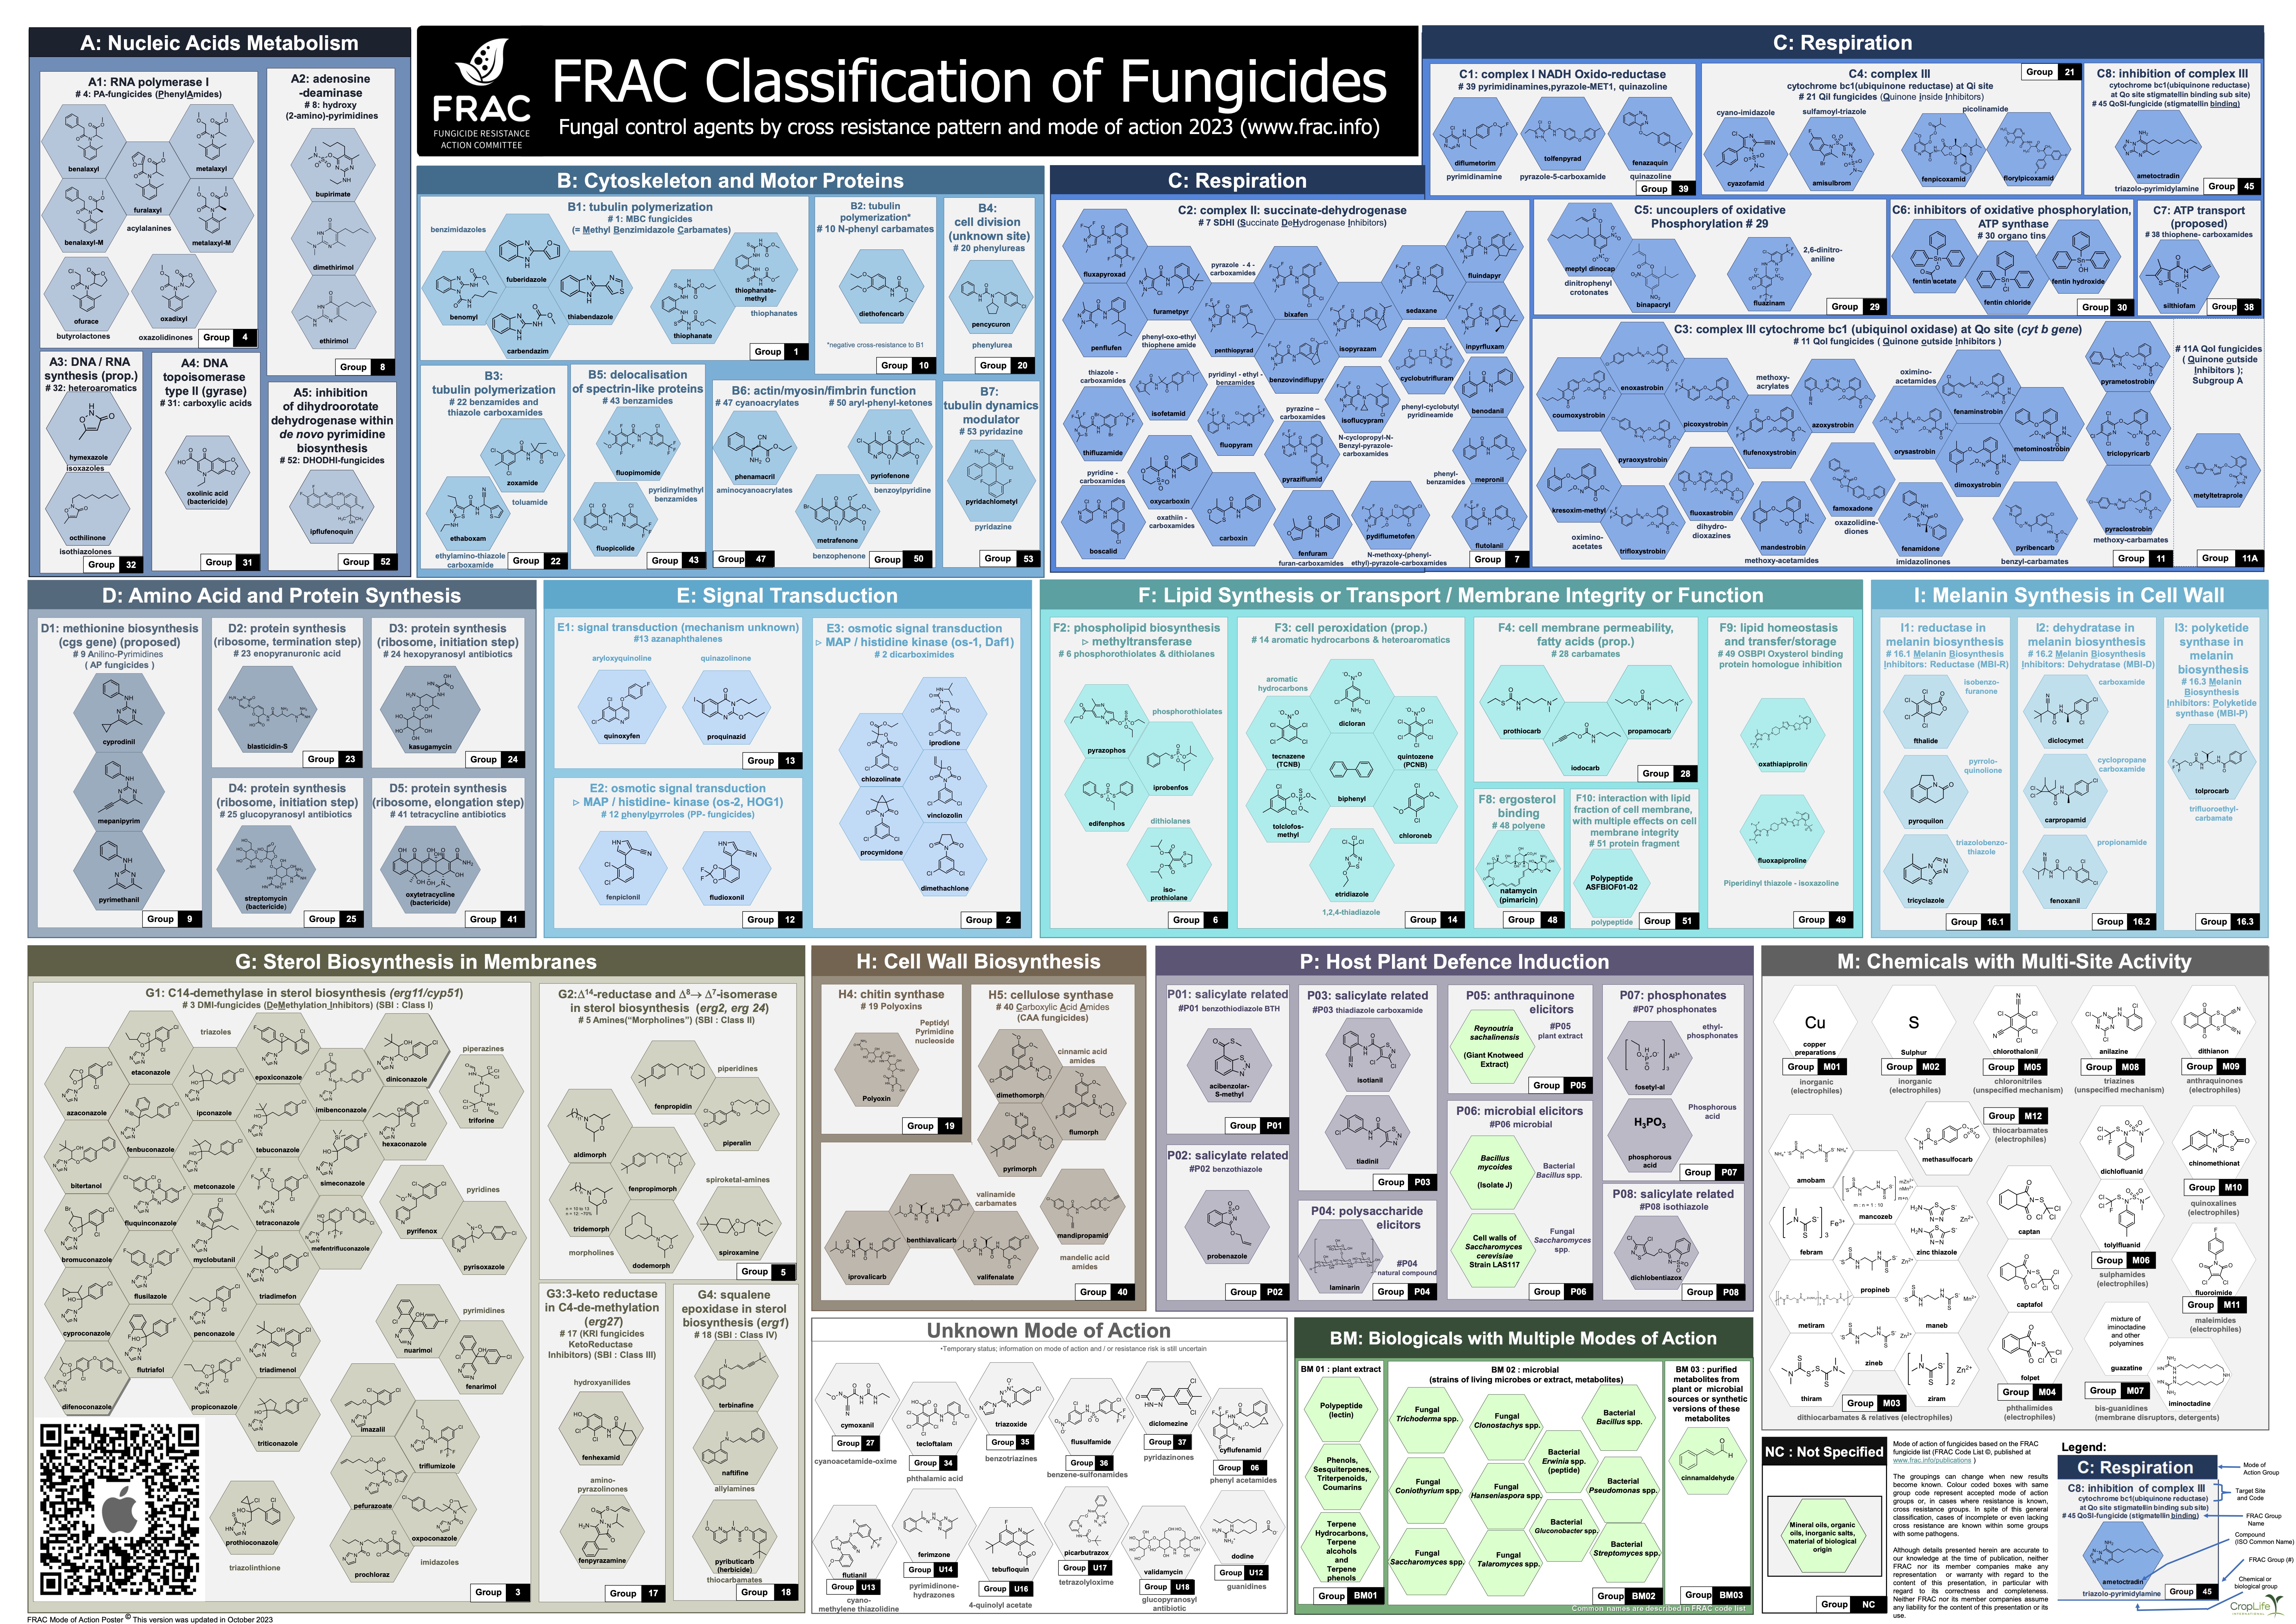 Pôster 2023 do FRAC sobre modos de ação de fungicidas - FRAC classification of fungicides 2023